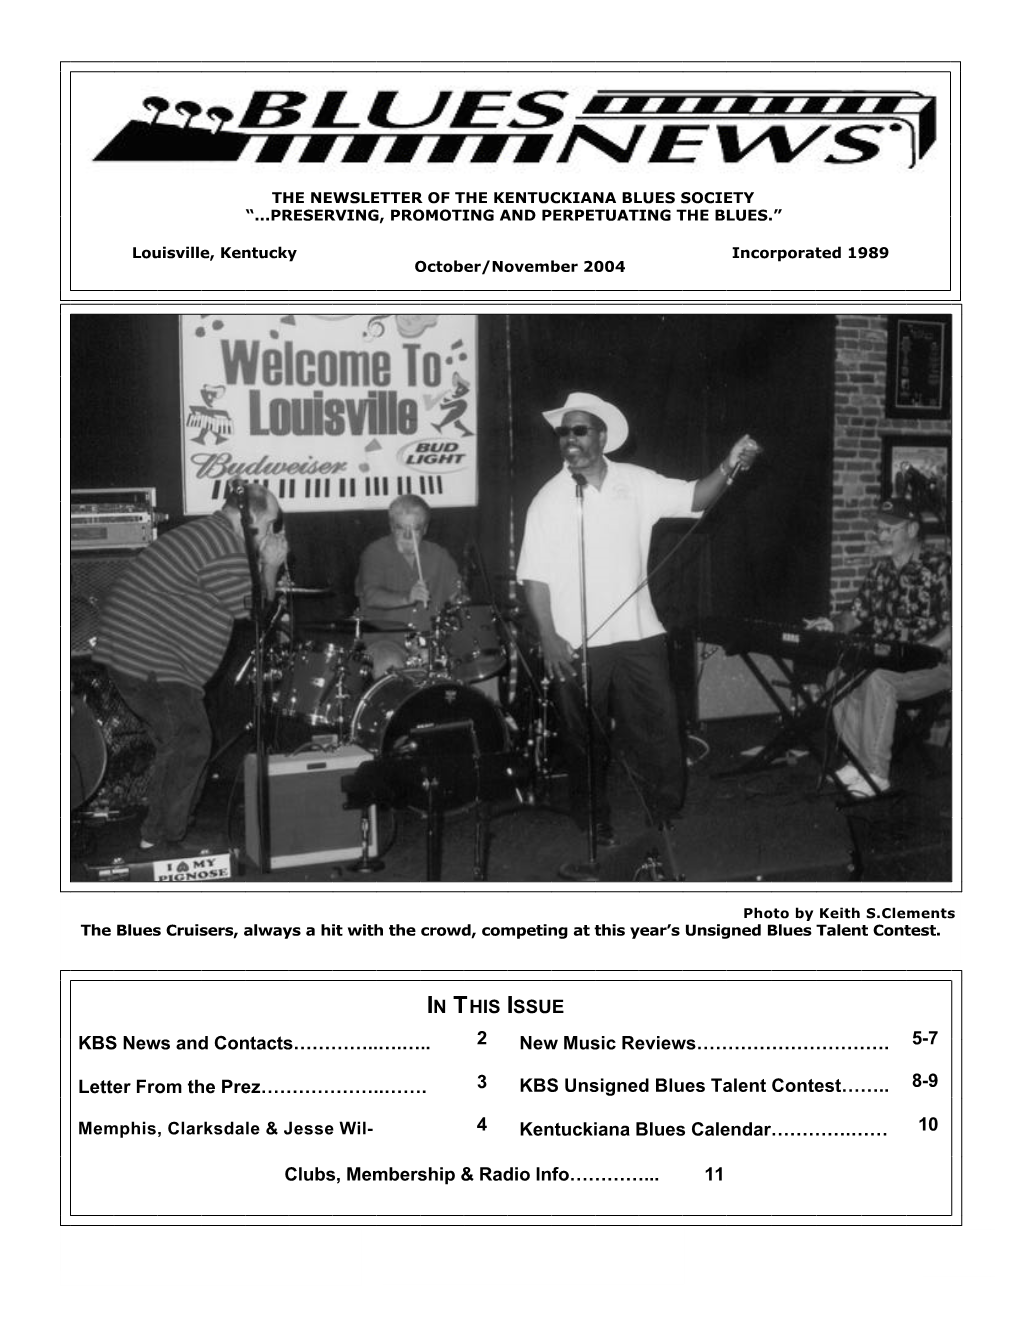 Kentuckiana Blues Society "Blues News" Oct 2004